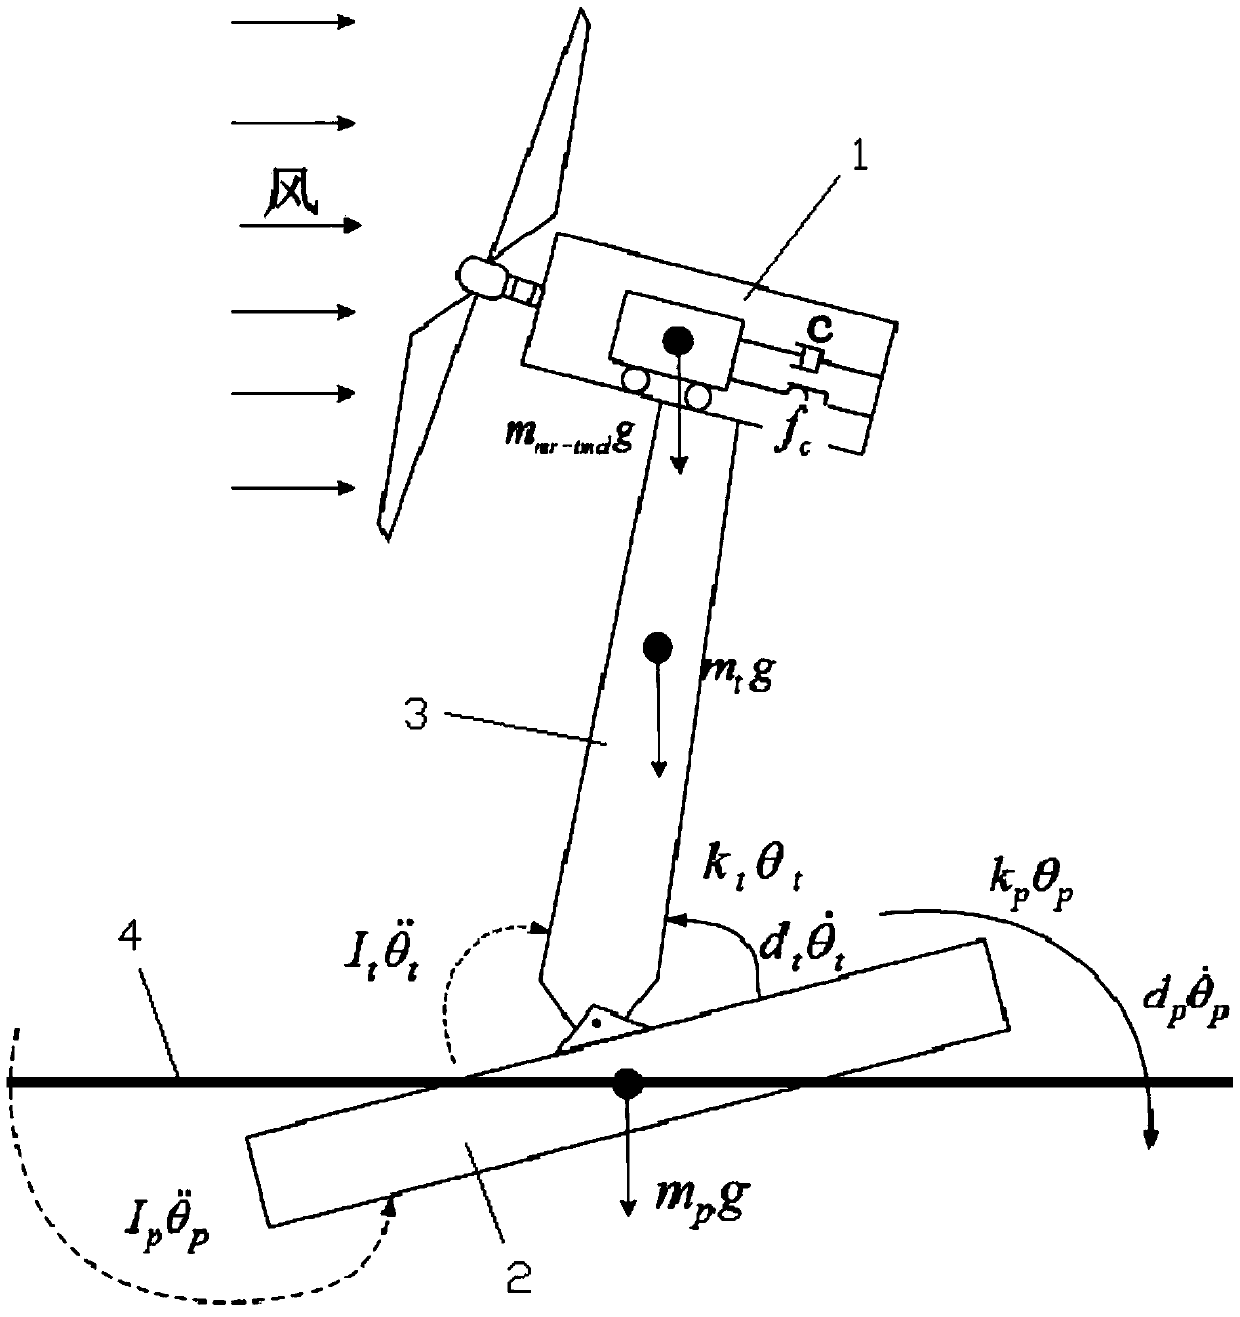 Load shedding method for floating wind turbines based on semi-active structural control of magnetorheological dampers